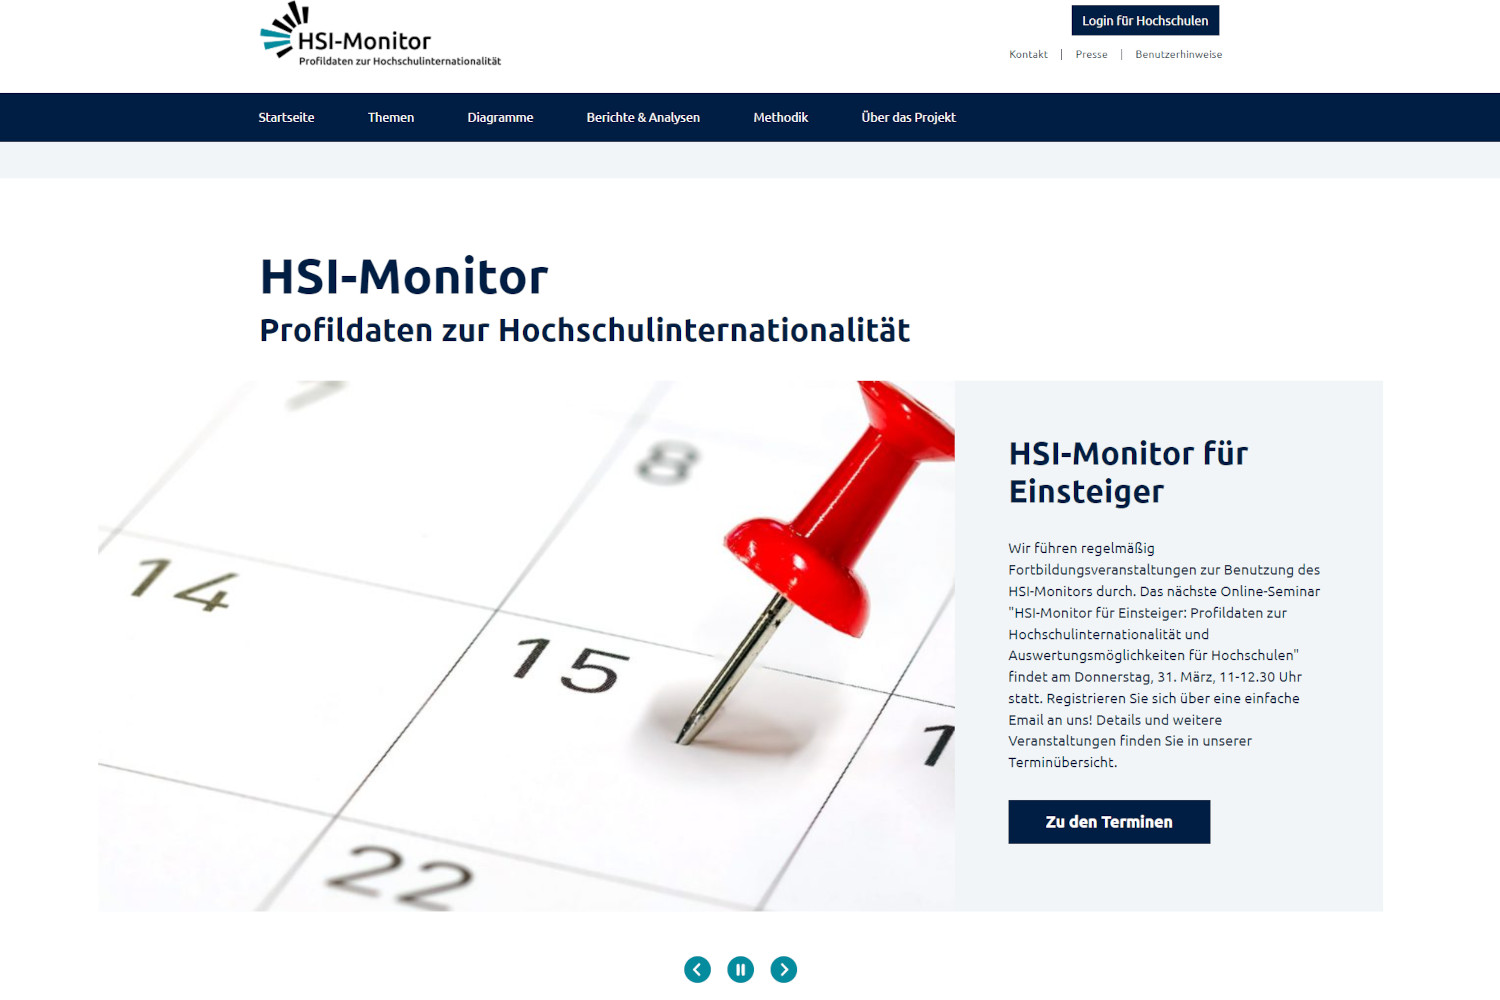 Startseite des HSI-Monitors